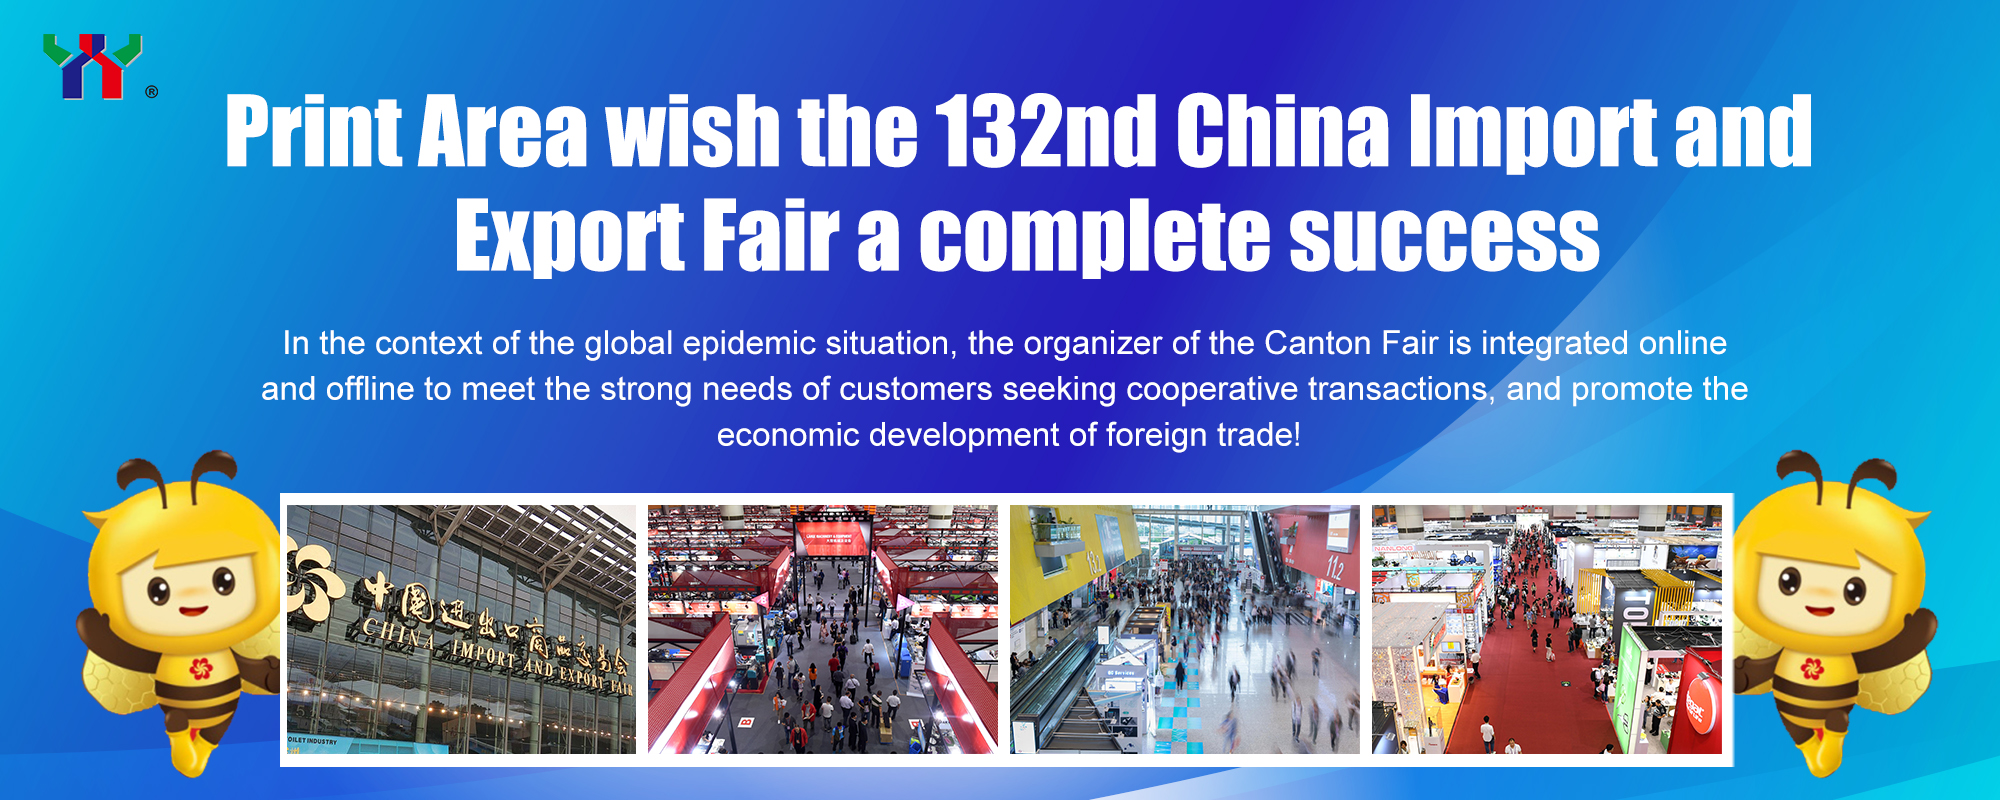 منطقه چاپ برای صد و سی و دومین نمایشگاه واردات و صادرات چین آرزوی موفقیت کامل دارد